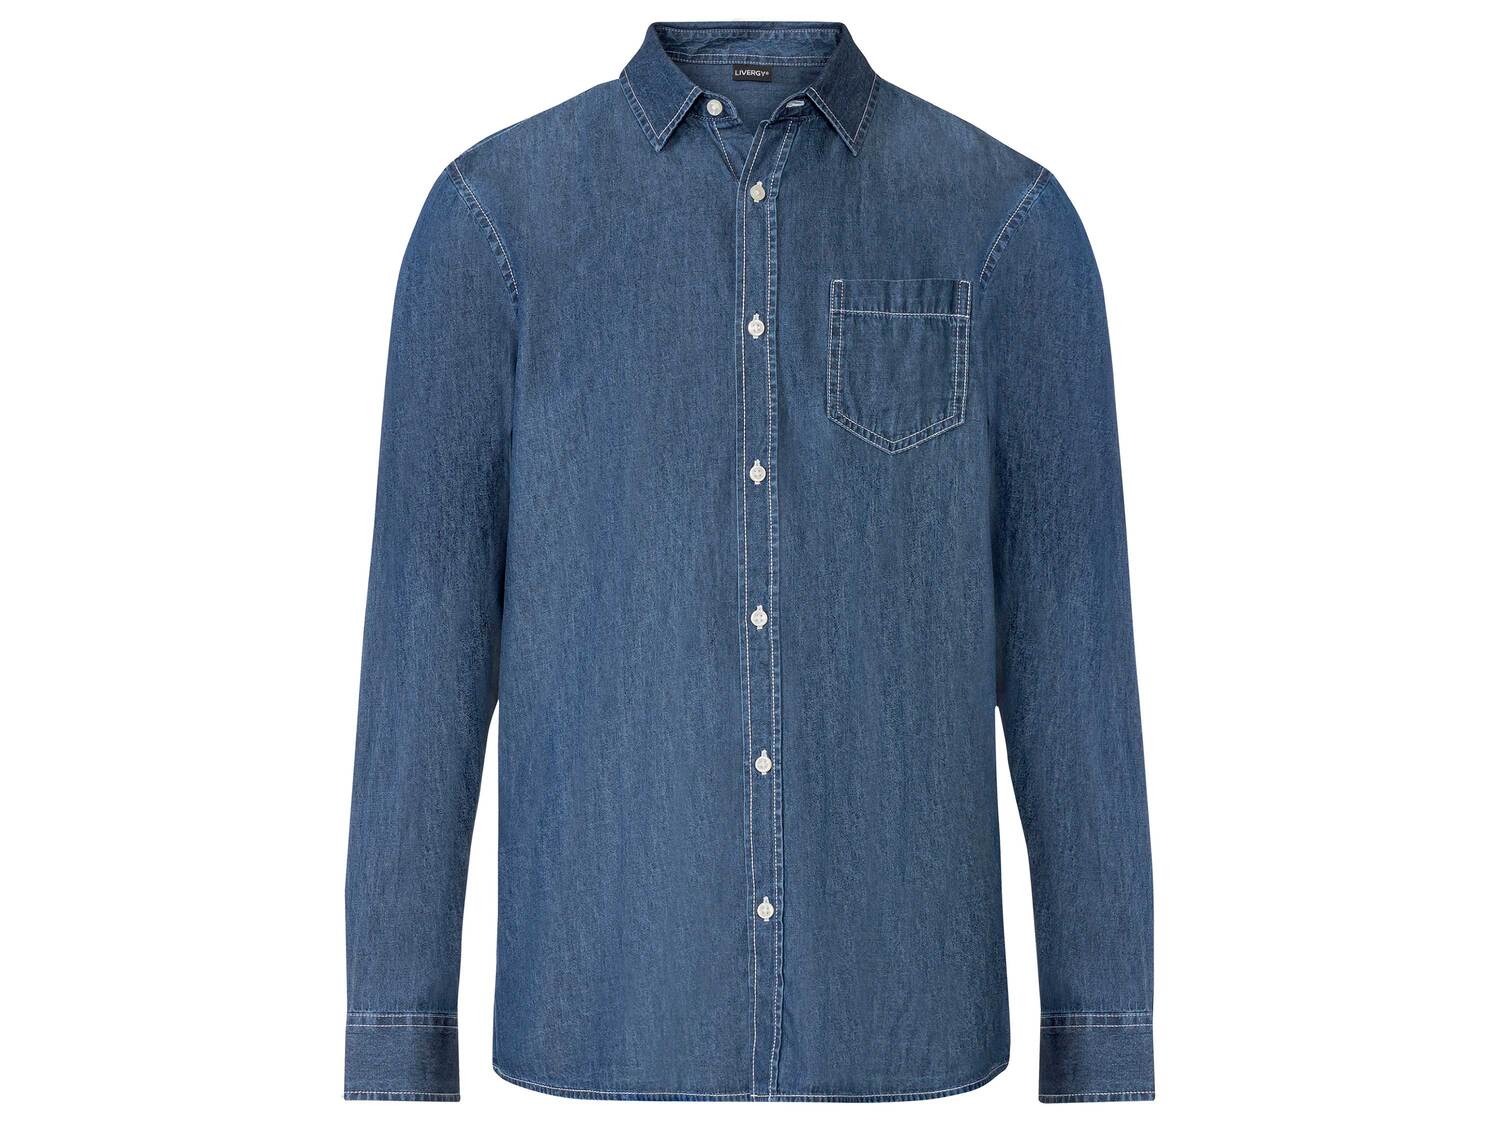 Chemise en jean , le prix 9.99 € 
- Du S au XL selon modèle
- Ex. 100 % coton
- ...